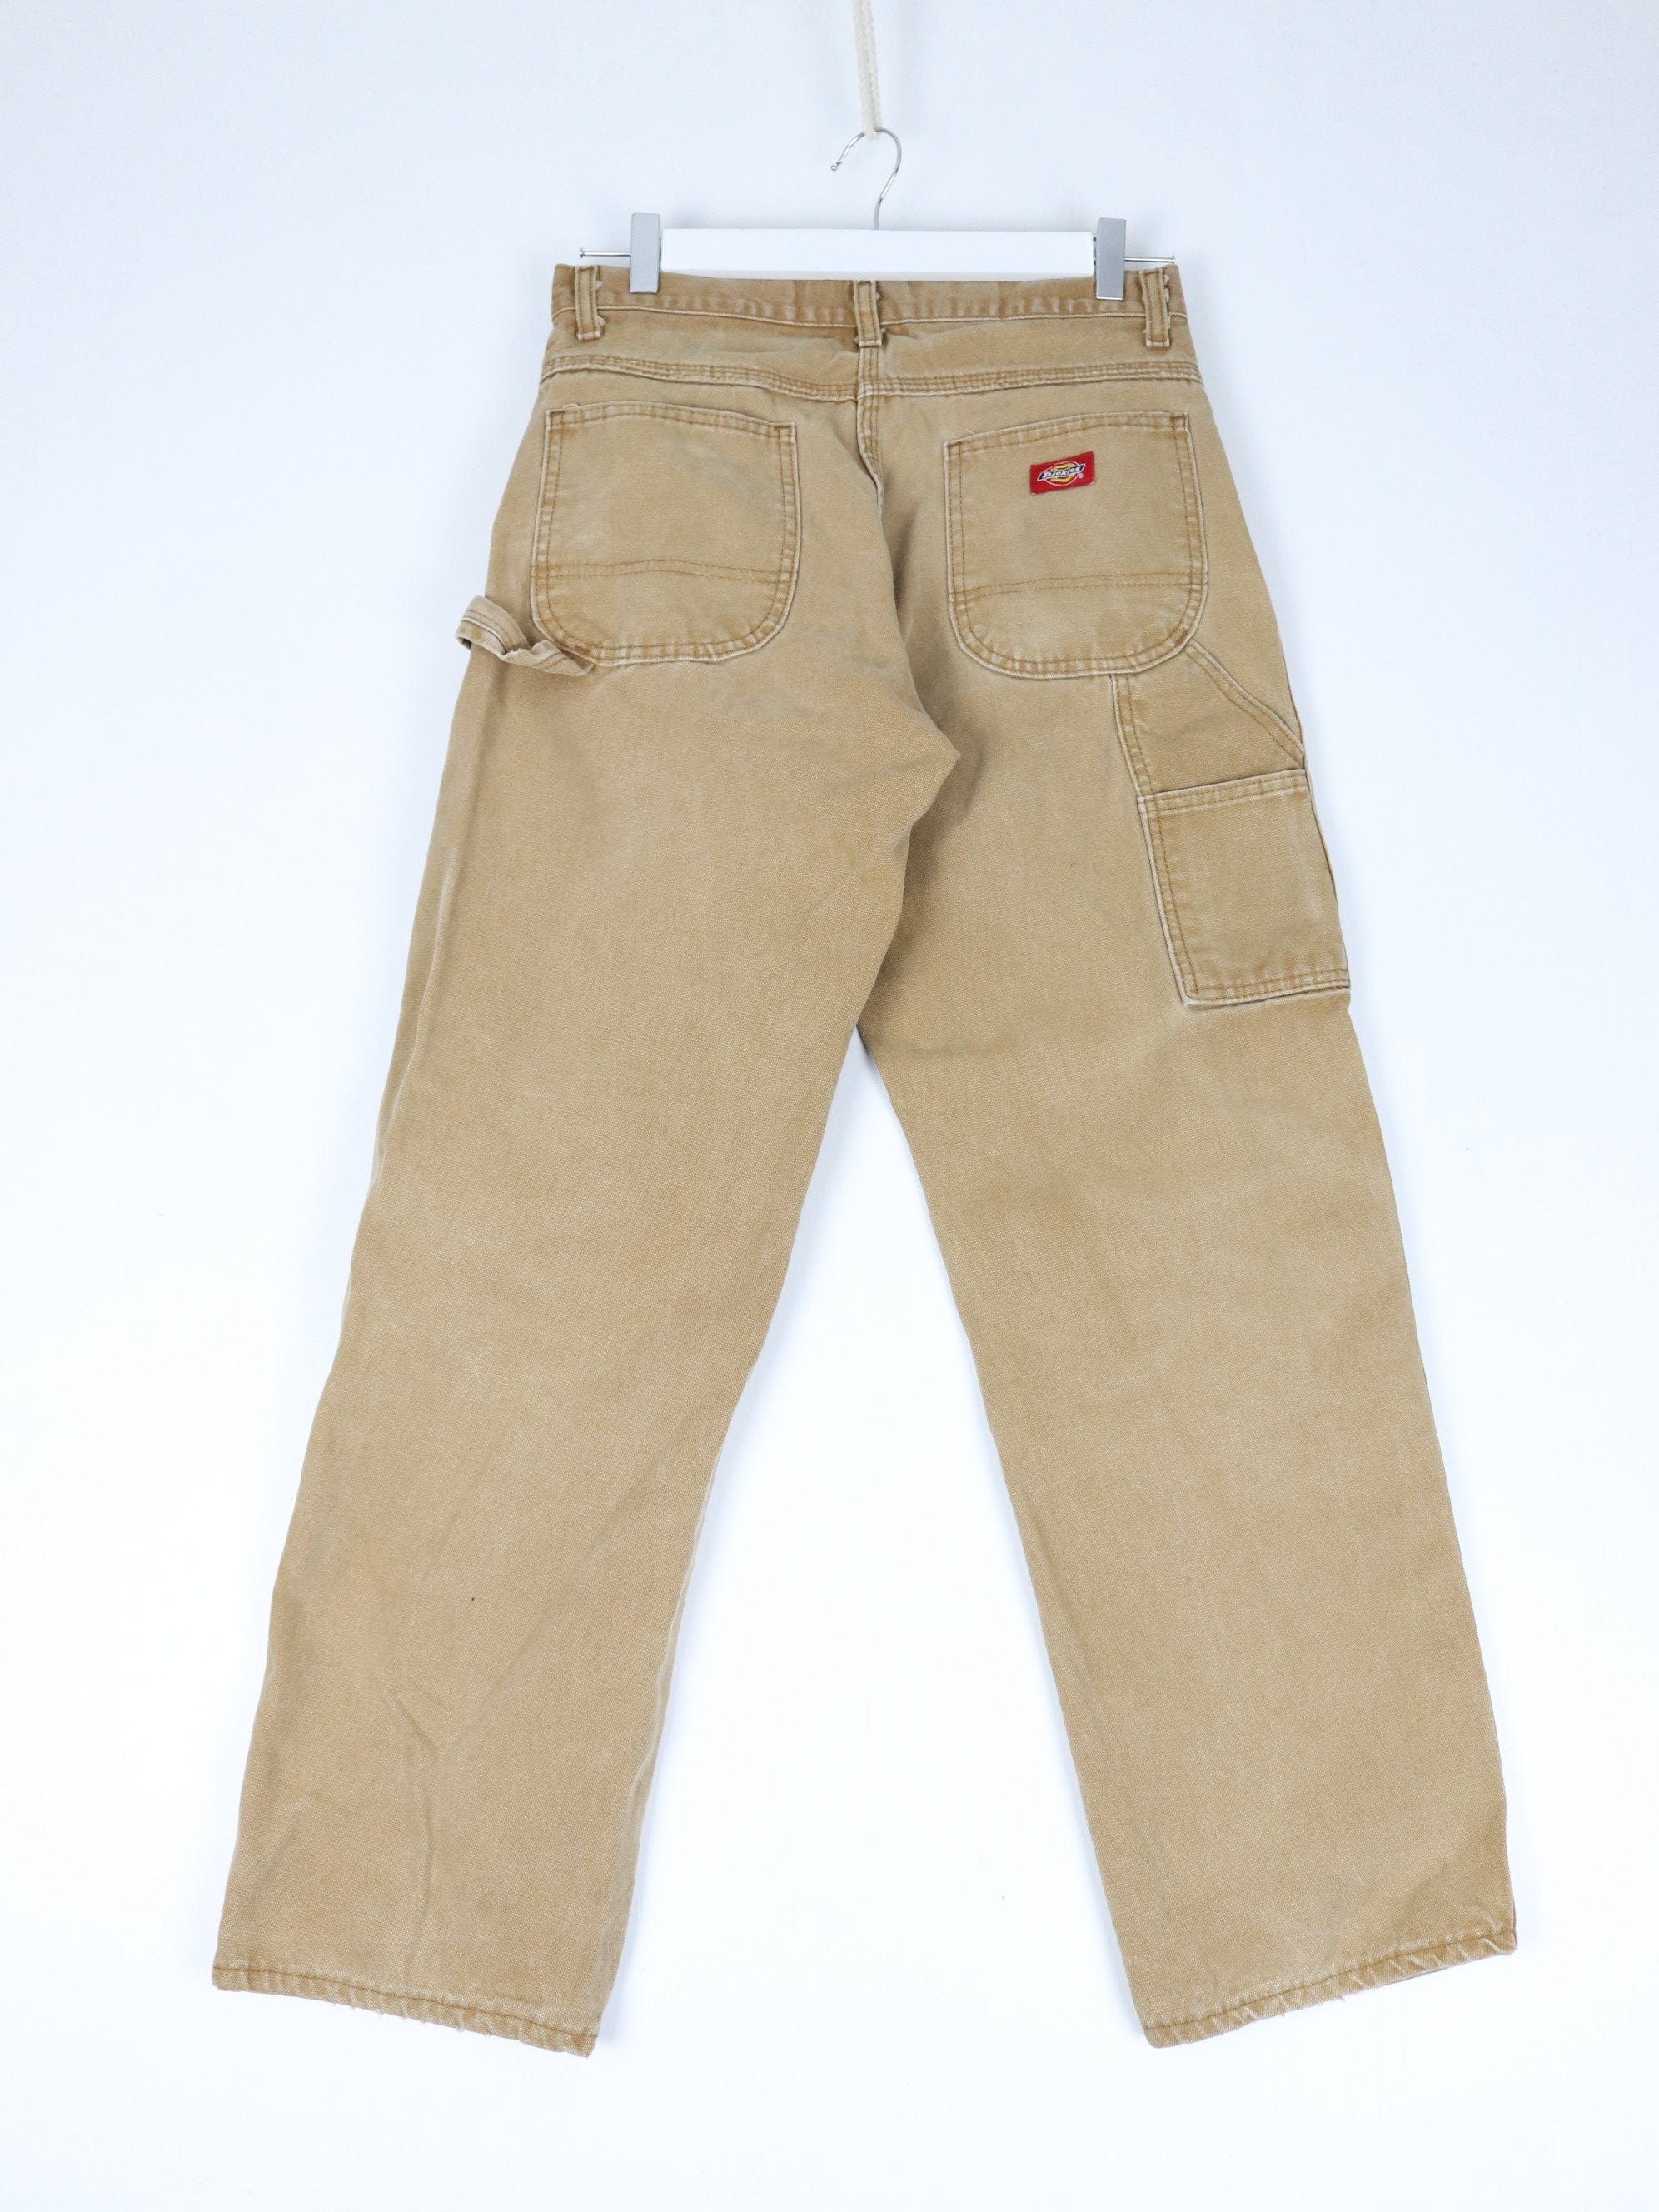 https://propervintagecanada.com/cdn/shop/files/dickies-pants-vintage-dickies-pants-mens-30-x-30-brown-work-wear-carpenters-31771541307451.jpg?v=1704239956